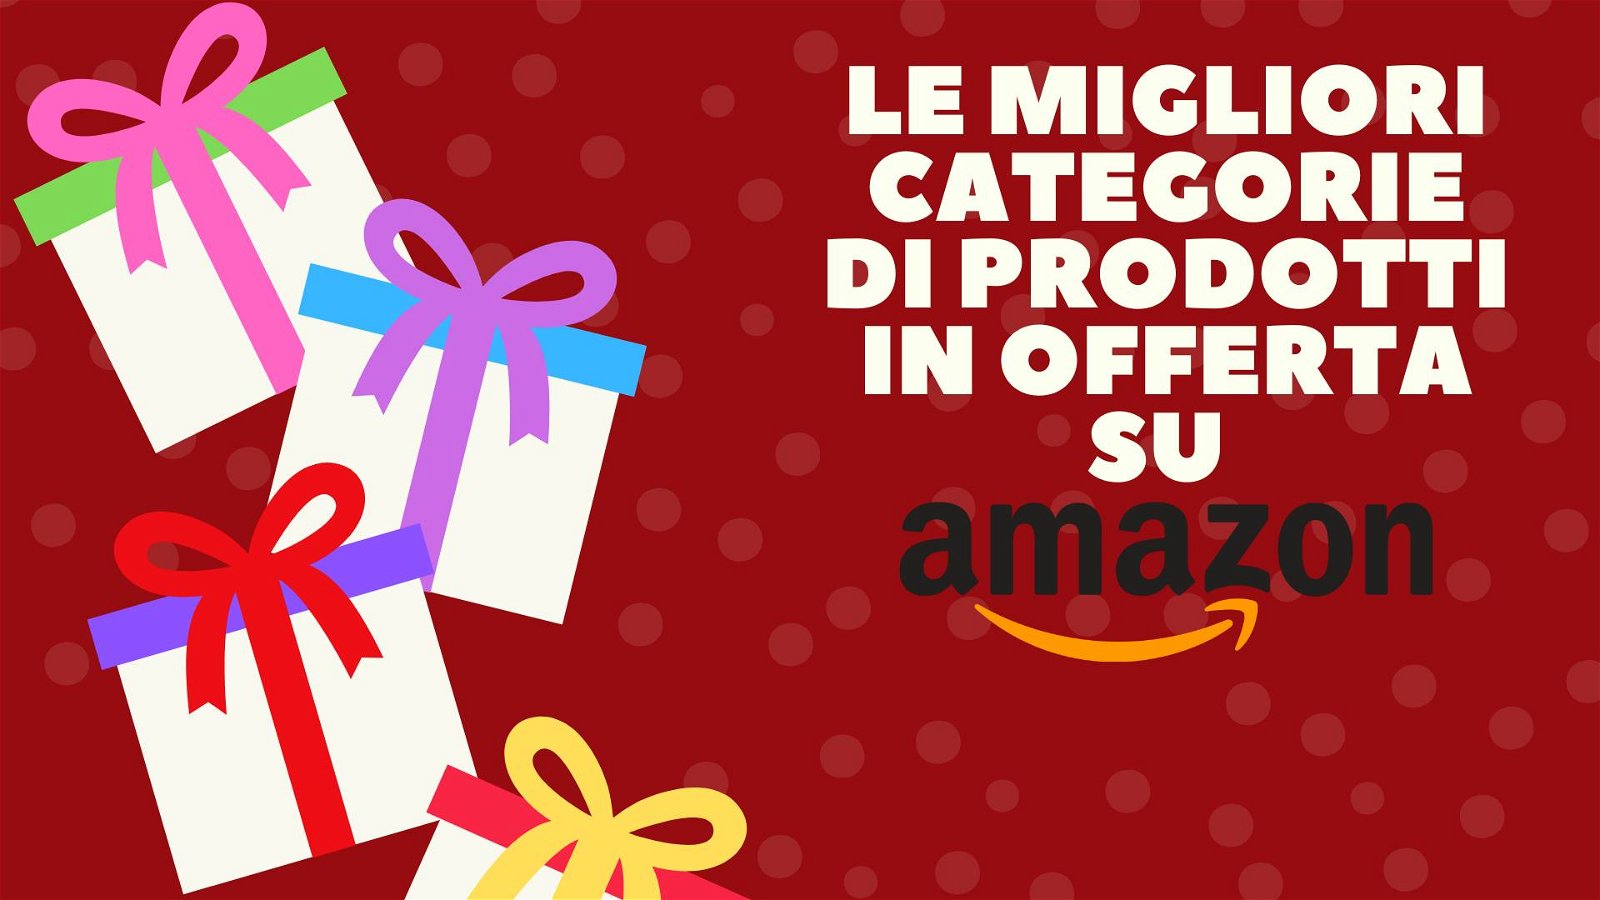 Immagine di Le migliori categorie di prodotti scontate su Amazon per il Natale